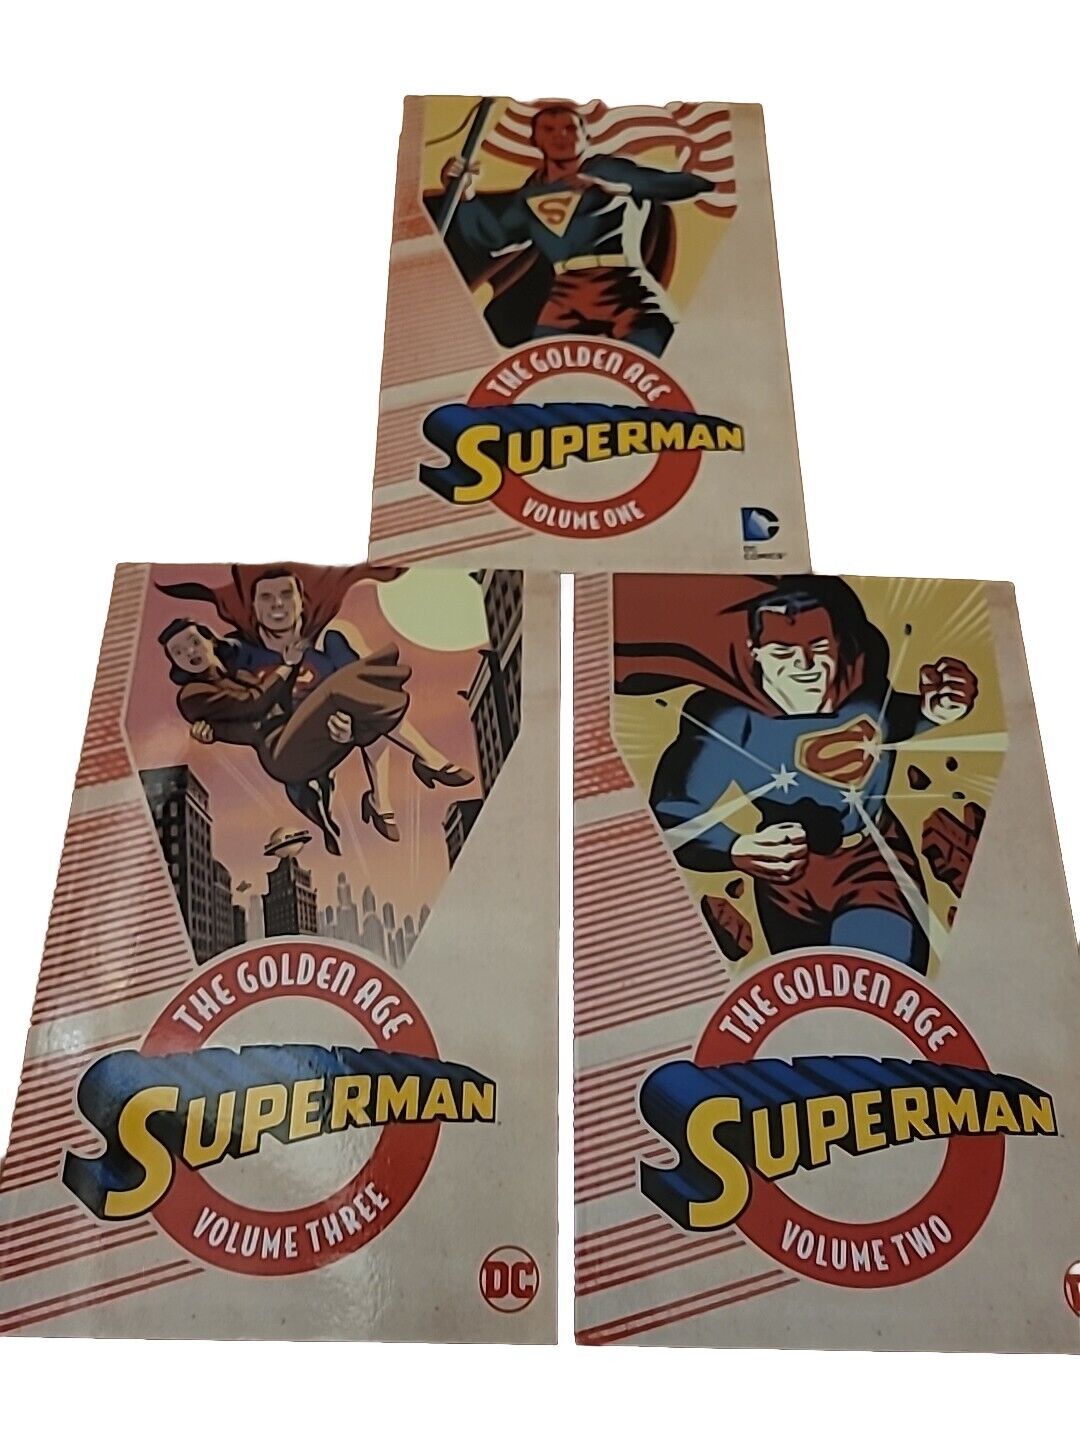 SUPERMAN GOLDEN AGE OMNIBUS VOLUMES 1-3 PAPERBACK SET